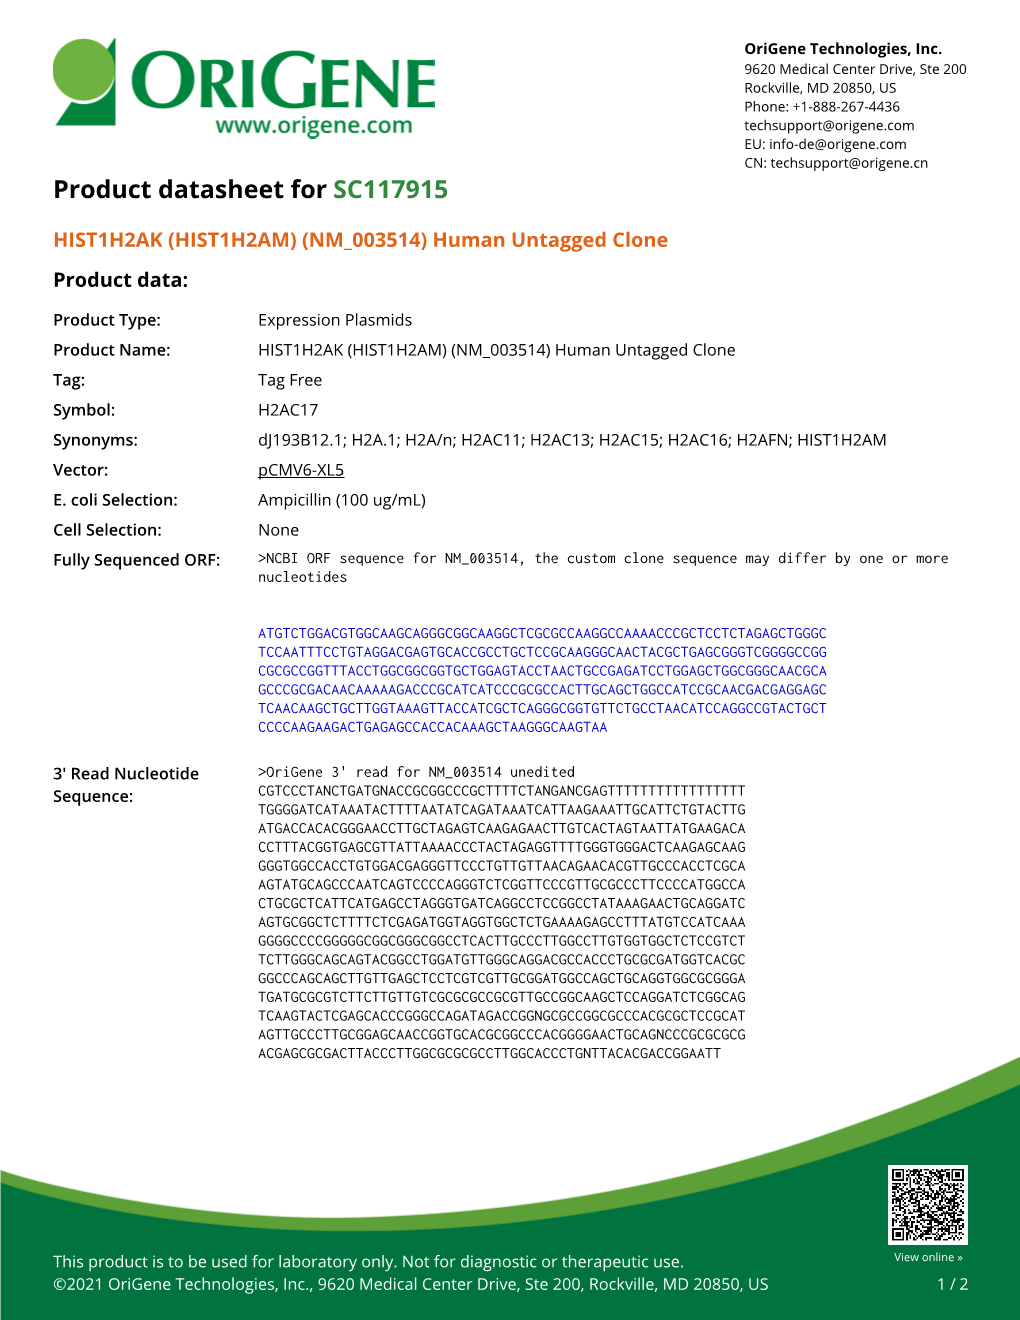 HIST1H2AK (HIST1H2AM) (NM 003514) Human Untagged Clone Product Data